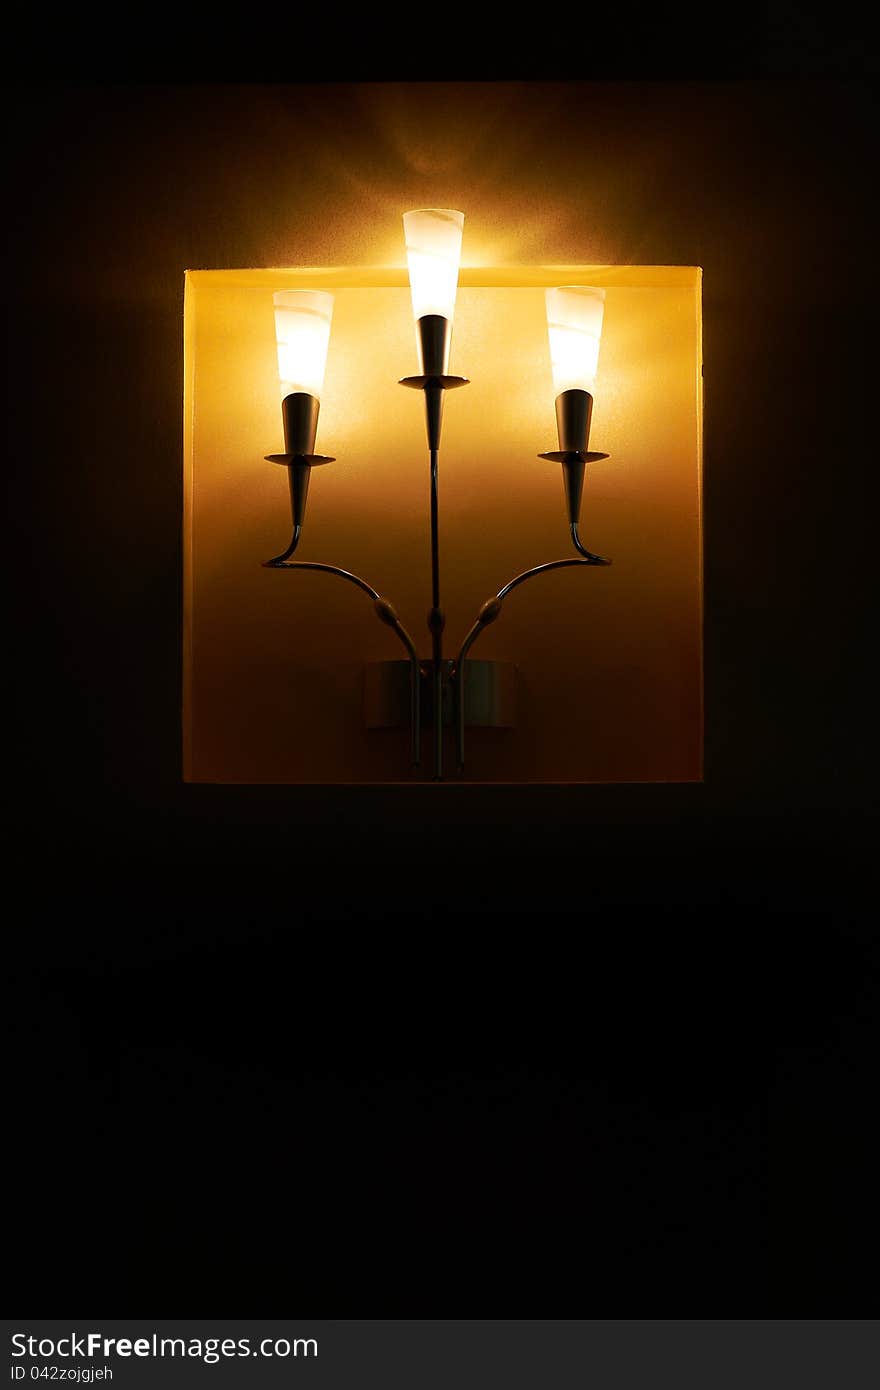 Wall lamp with three shades. Wall lamp with three shades